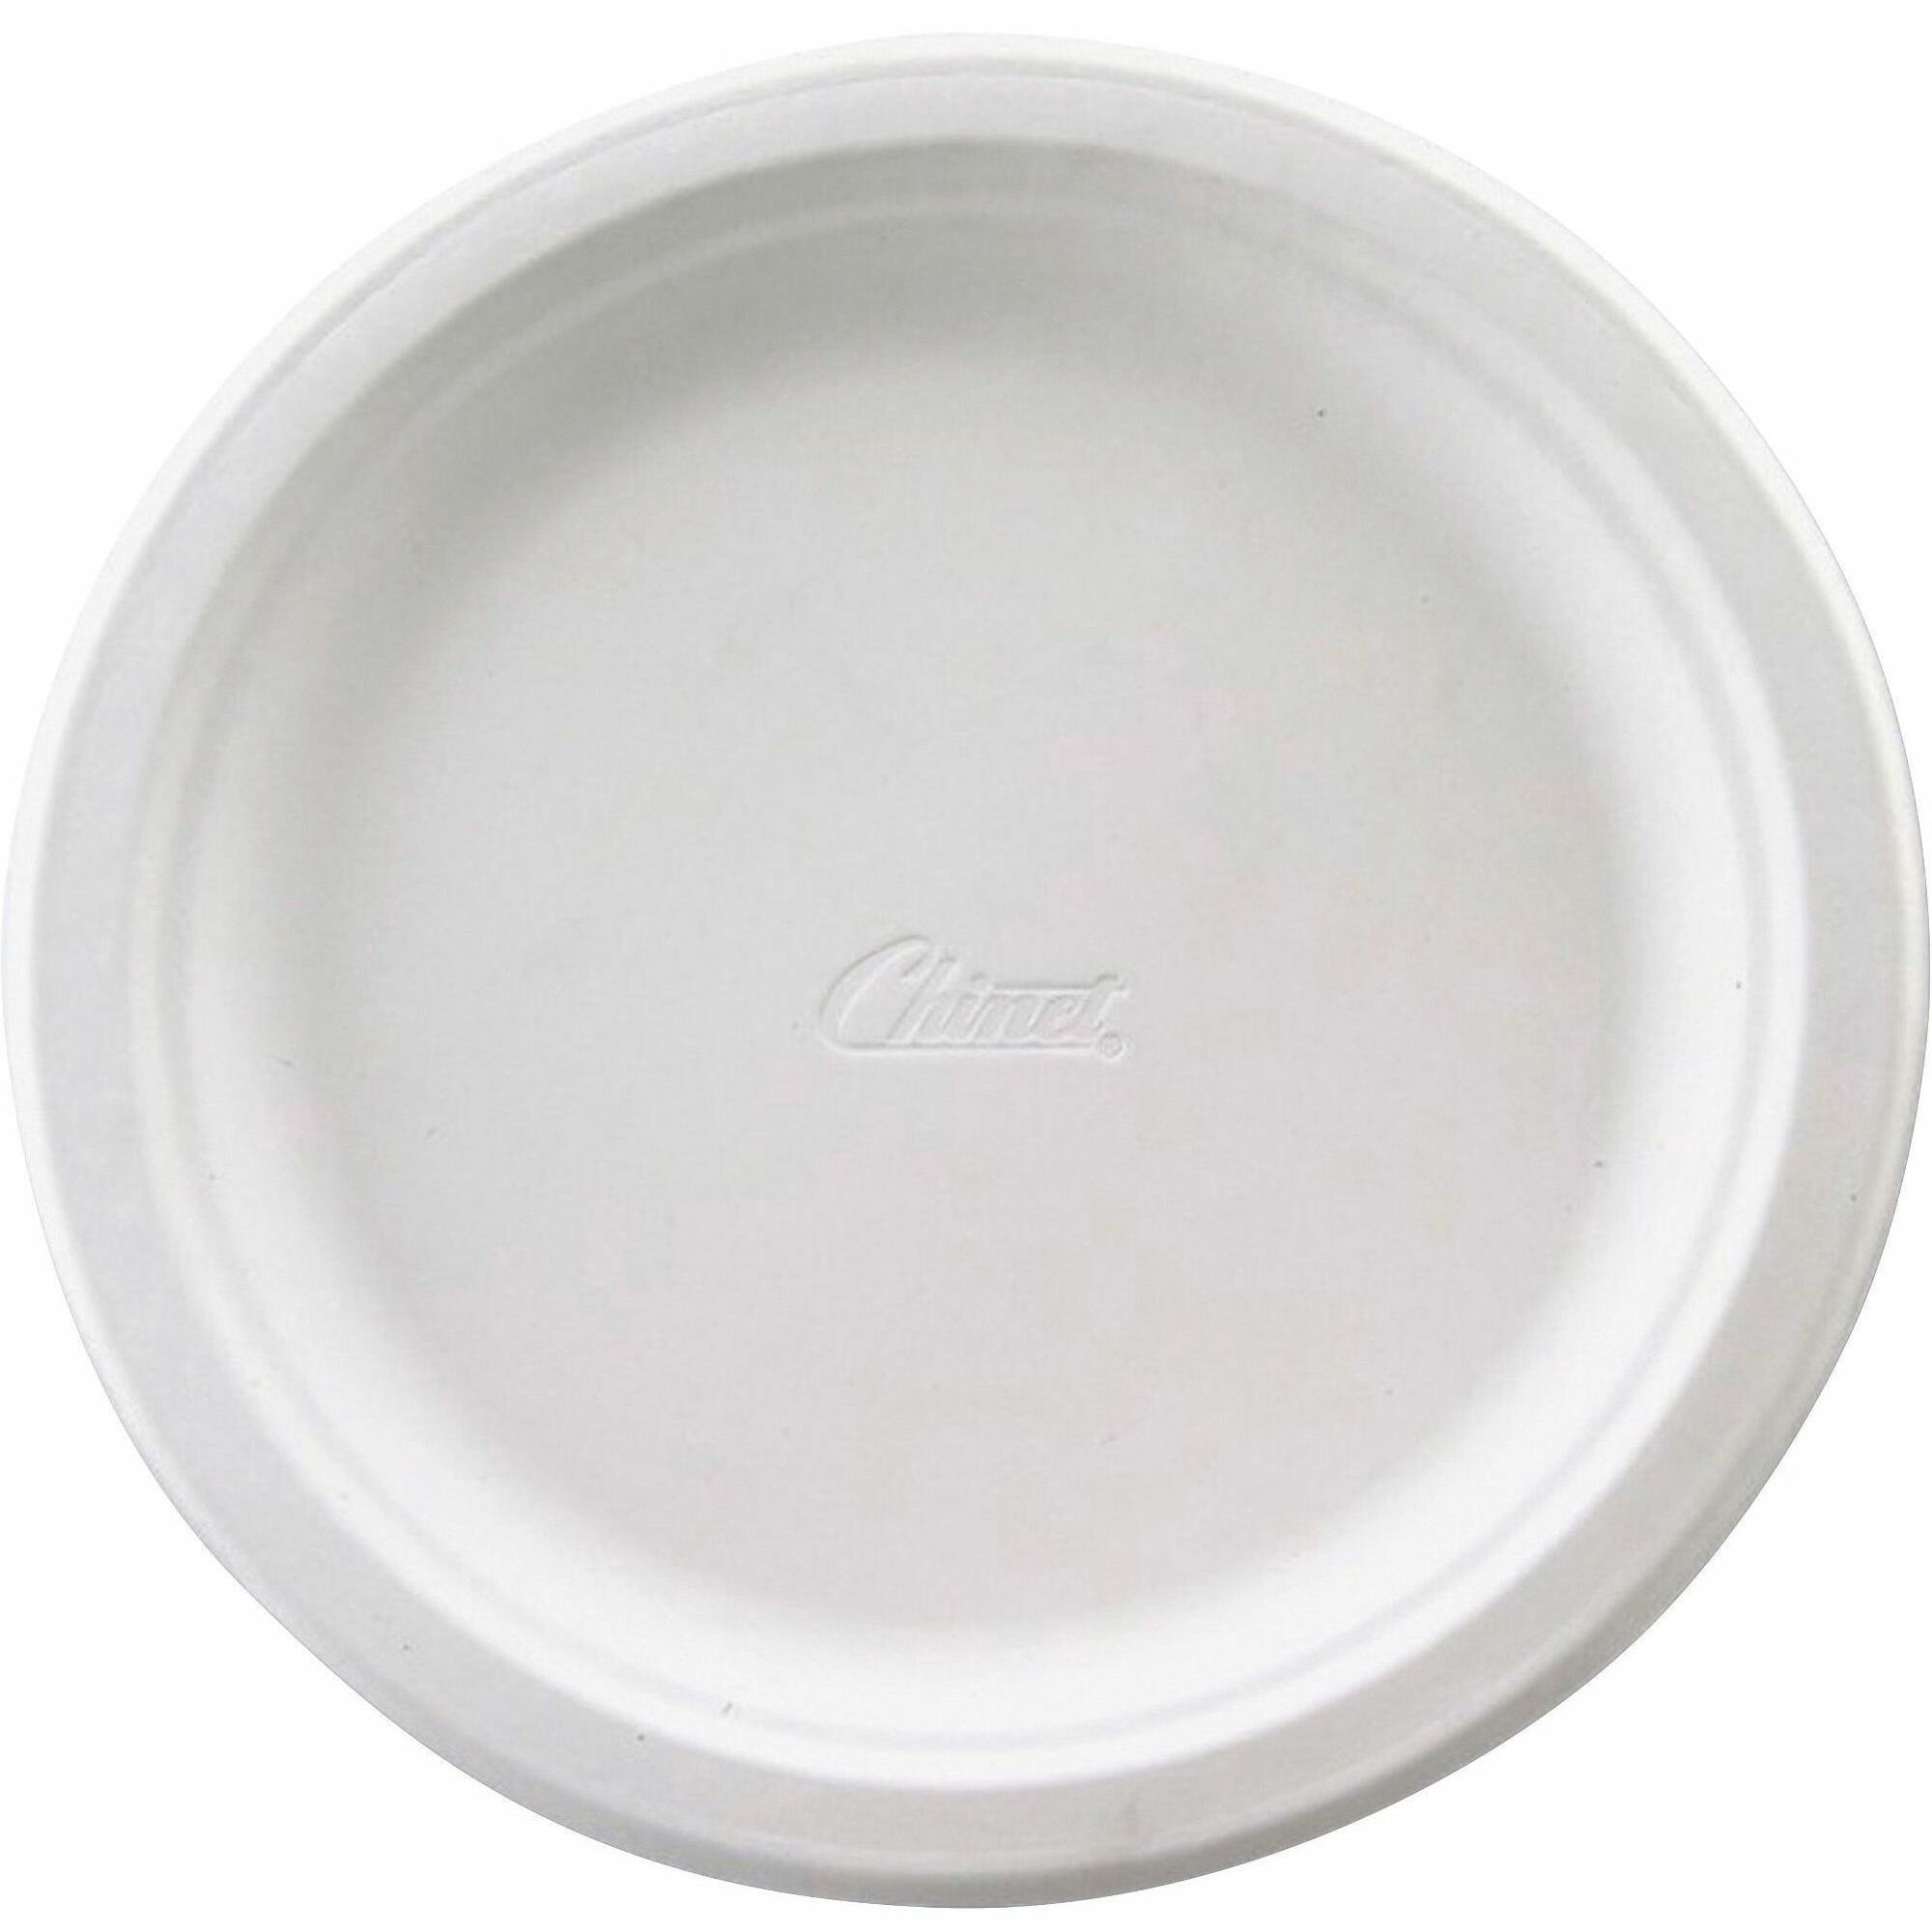 Chinet 6-3/4" Premium Tableware Plates - White - 125 / Pack